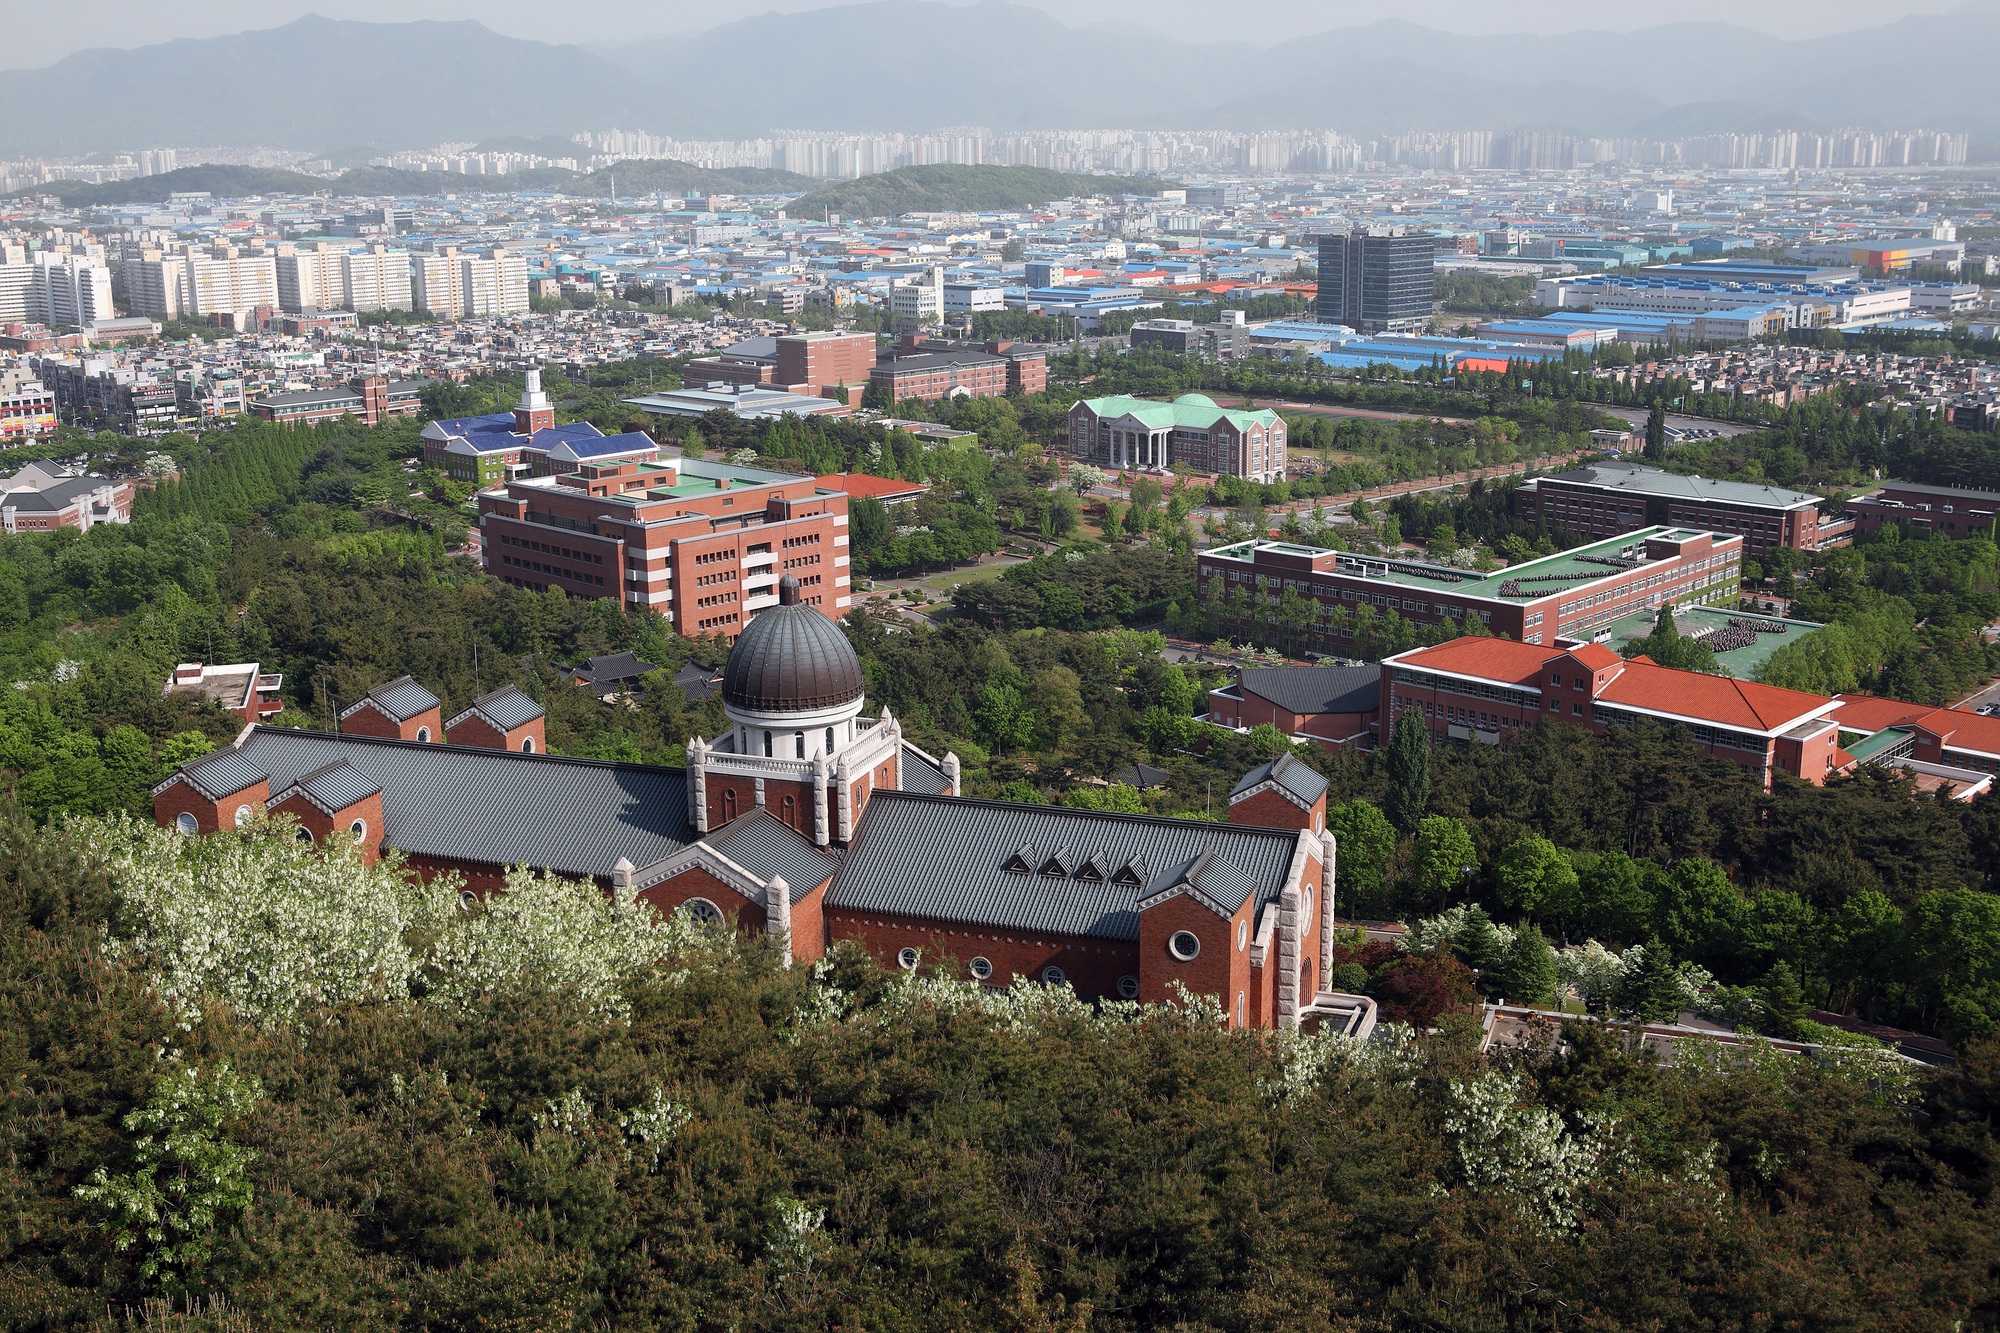 Ghé thăm ngôi trường có khuôn viên đẹp nhất Hàn Quốc: Từng lên gần 150 phim, có hẳn 2 trạm tàu điện ngầm bên trong- Ảnh 3.